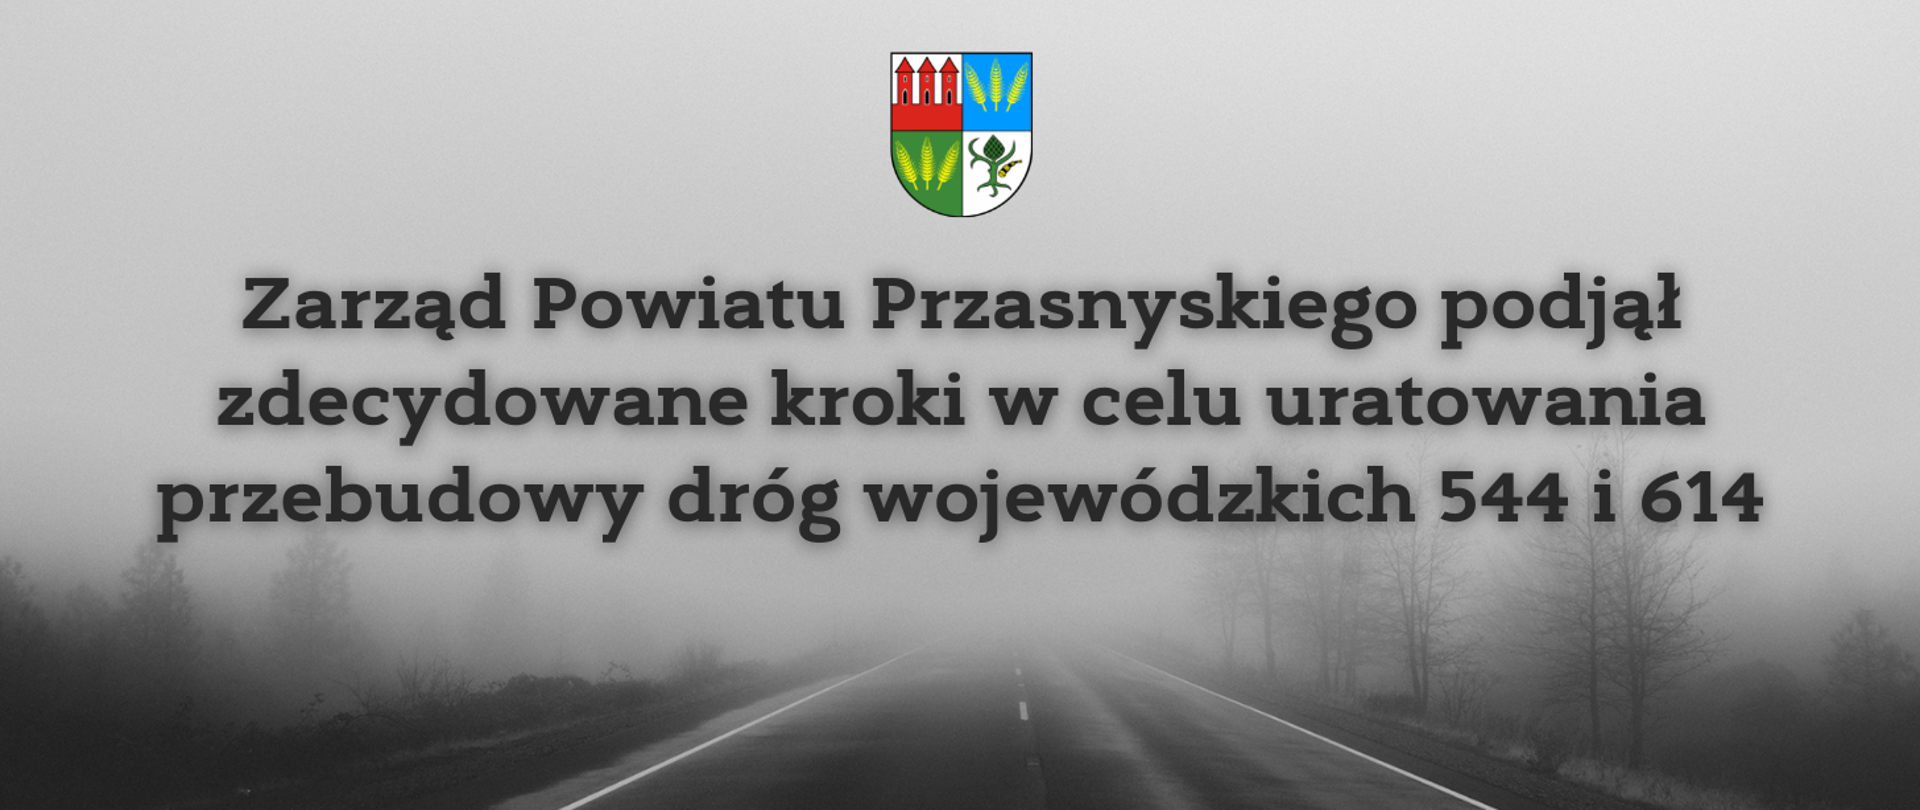 Grafika przedstawia informację o podjęciu przez Zarząd Powiatu Przasnyskiego zdecydowanych kroków w celu uratowania przebudowy dróg wojewódzkich 544 i 614.